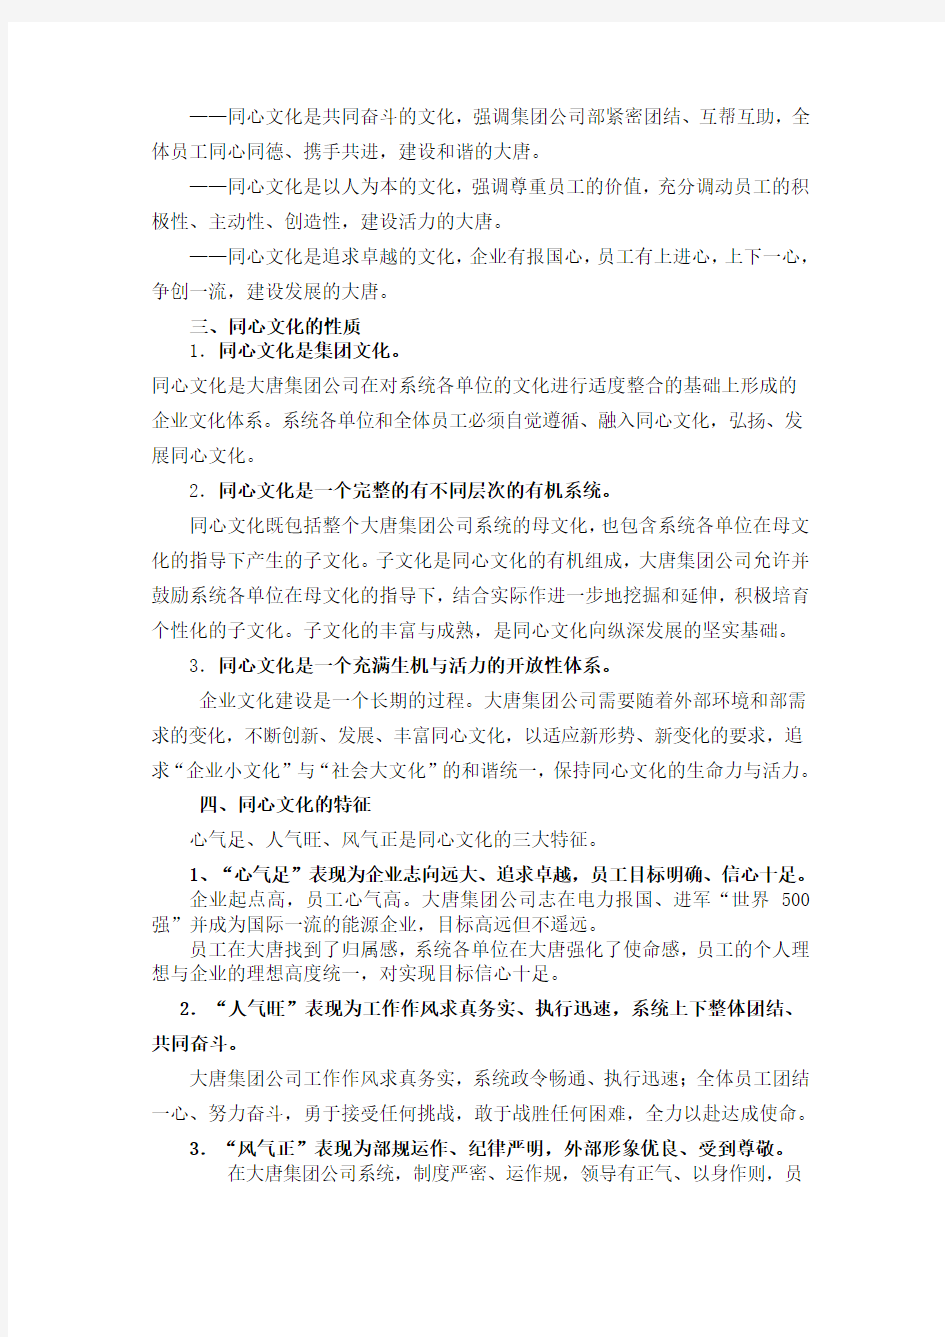 中国大唐集团企业文化手册范本